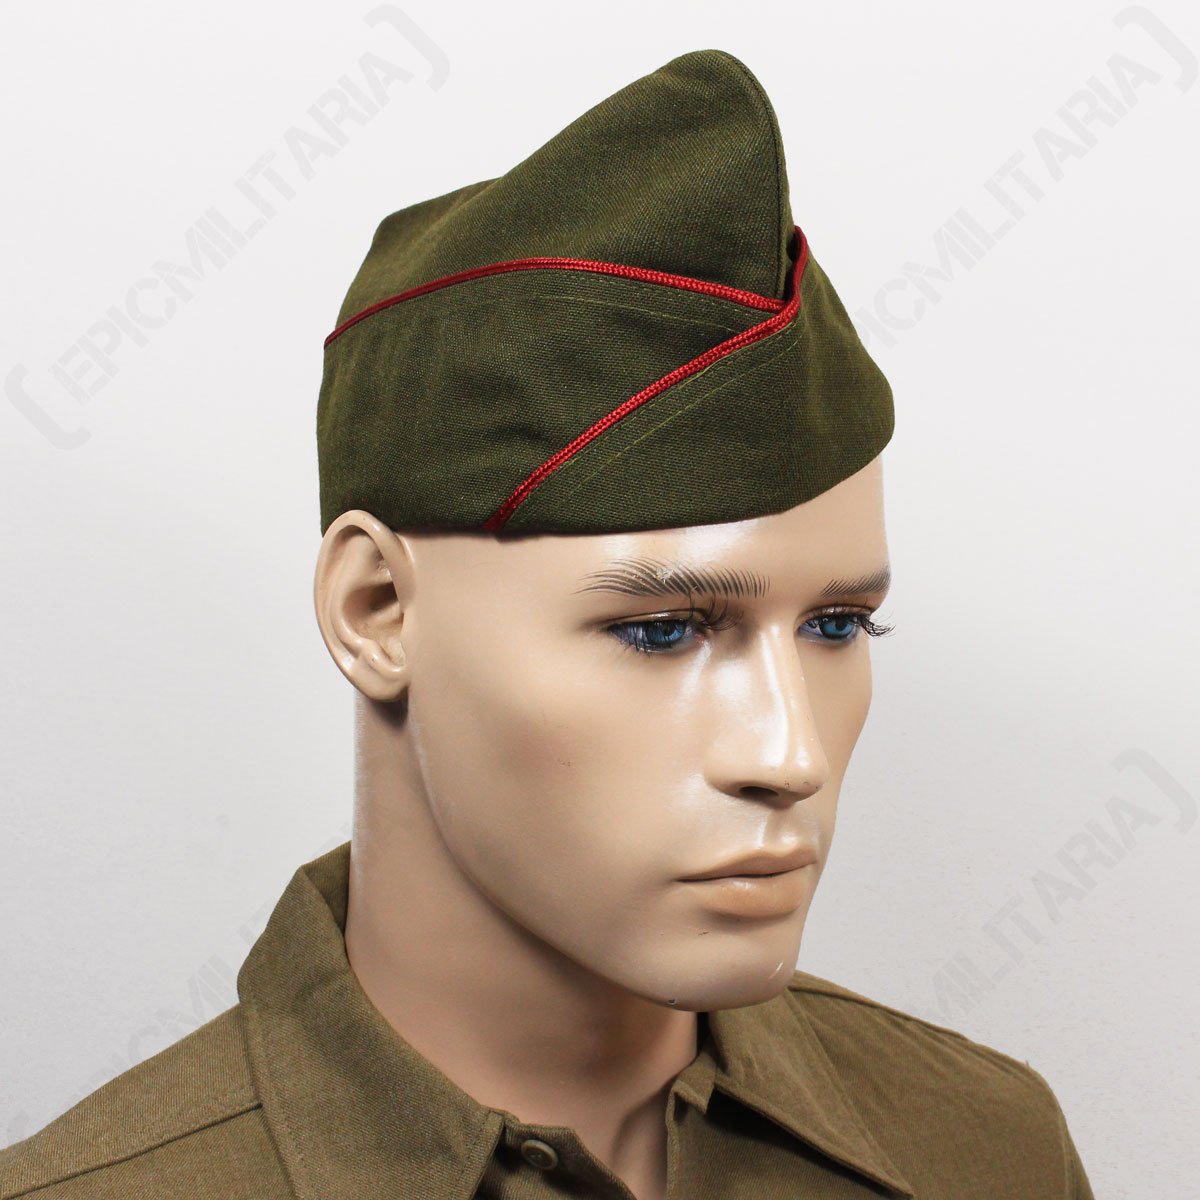 z402 WW2 US Army EM Khaki Garrison Cap unpiped size 7 1/2 ir15b 